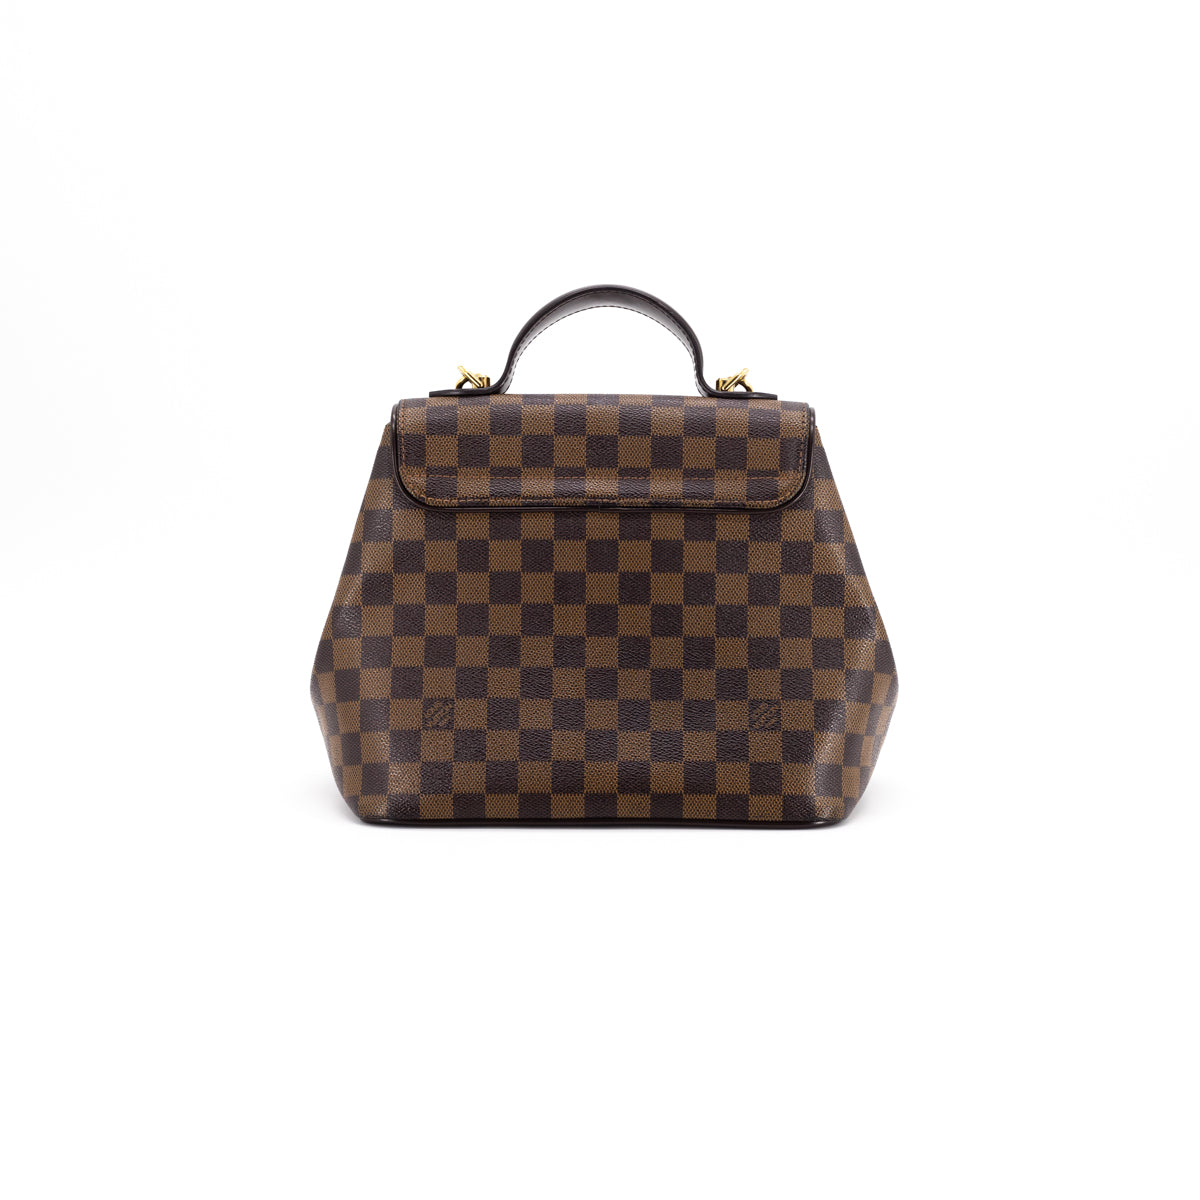 Louis Vuitton Bergamo Handbag 310758